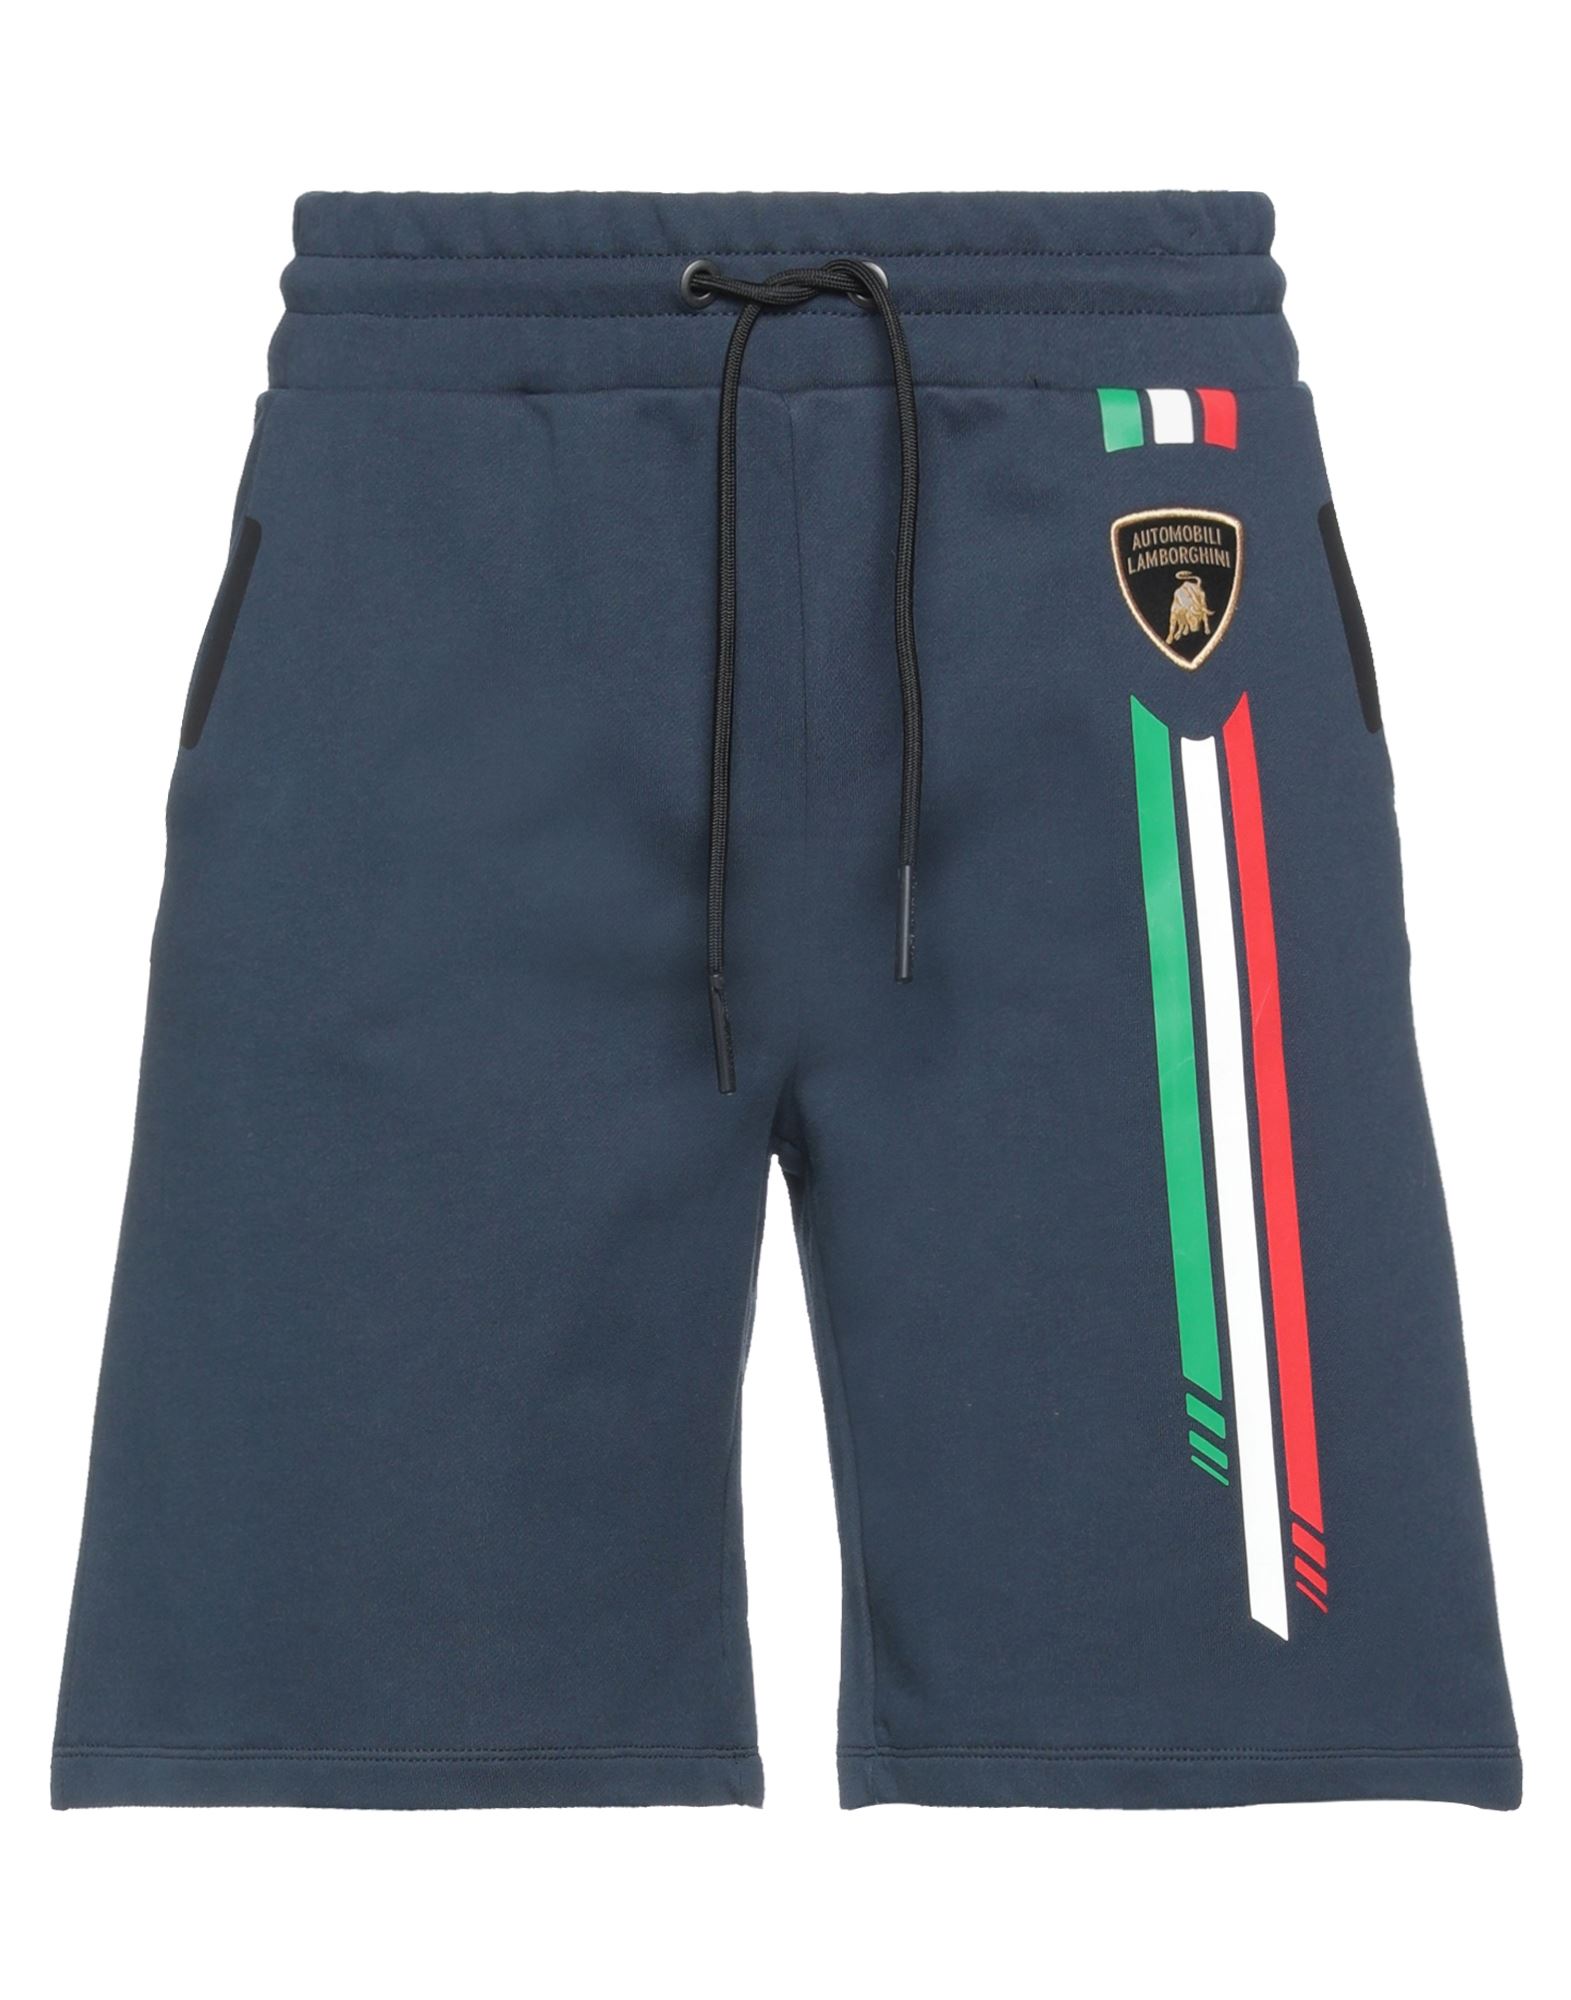 Automobili Lamborghini Man Shorts & Bermuda Shorts Blue Size L Cotton